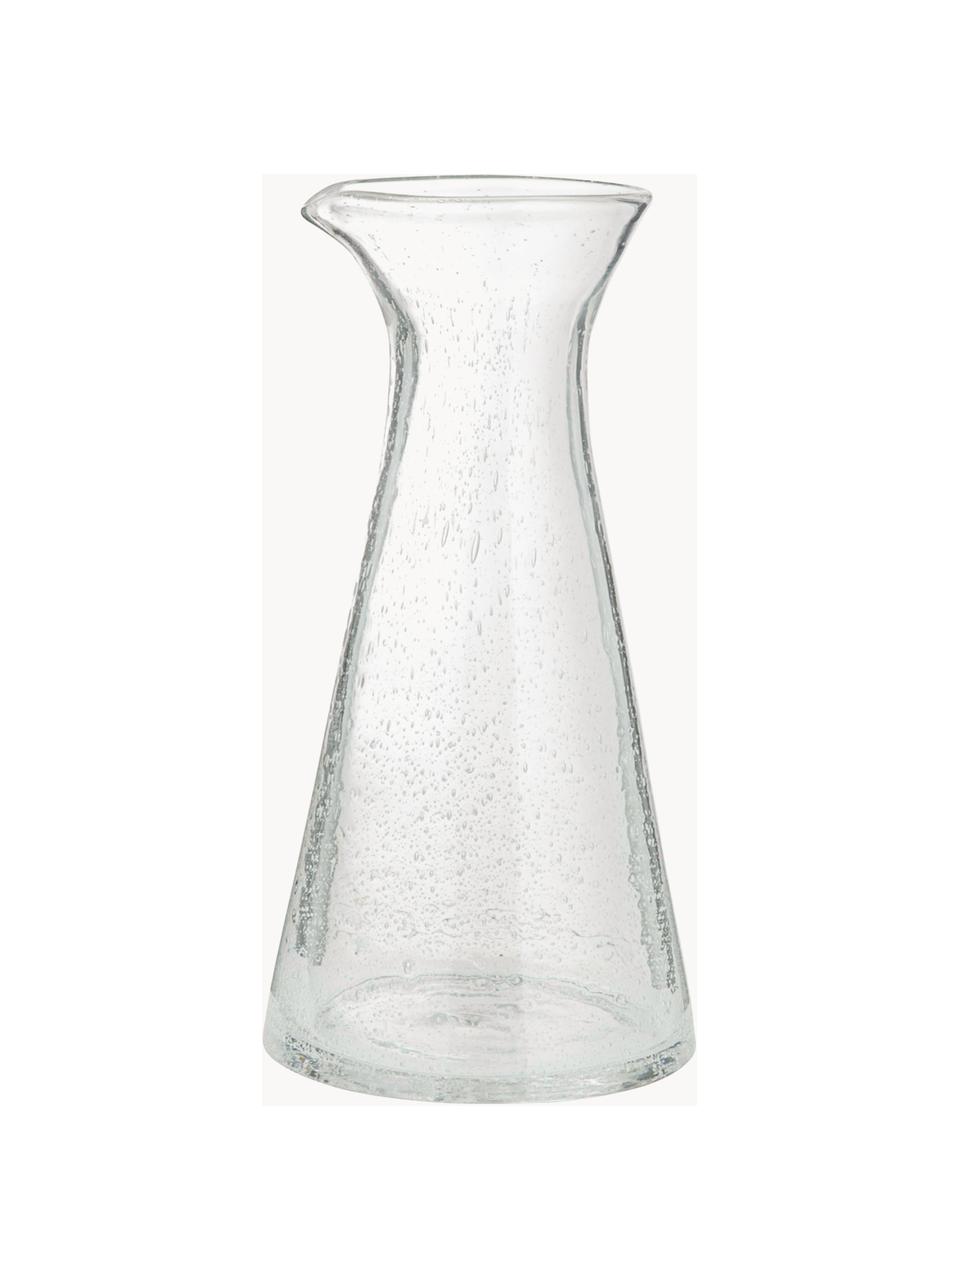 Karafka ze szkła dmuchanego Bubble, 800 ml, Szkło dmuchane, Transparentny, 800 ml